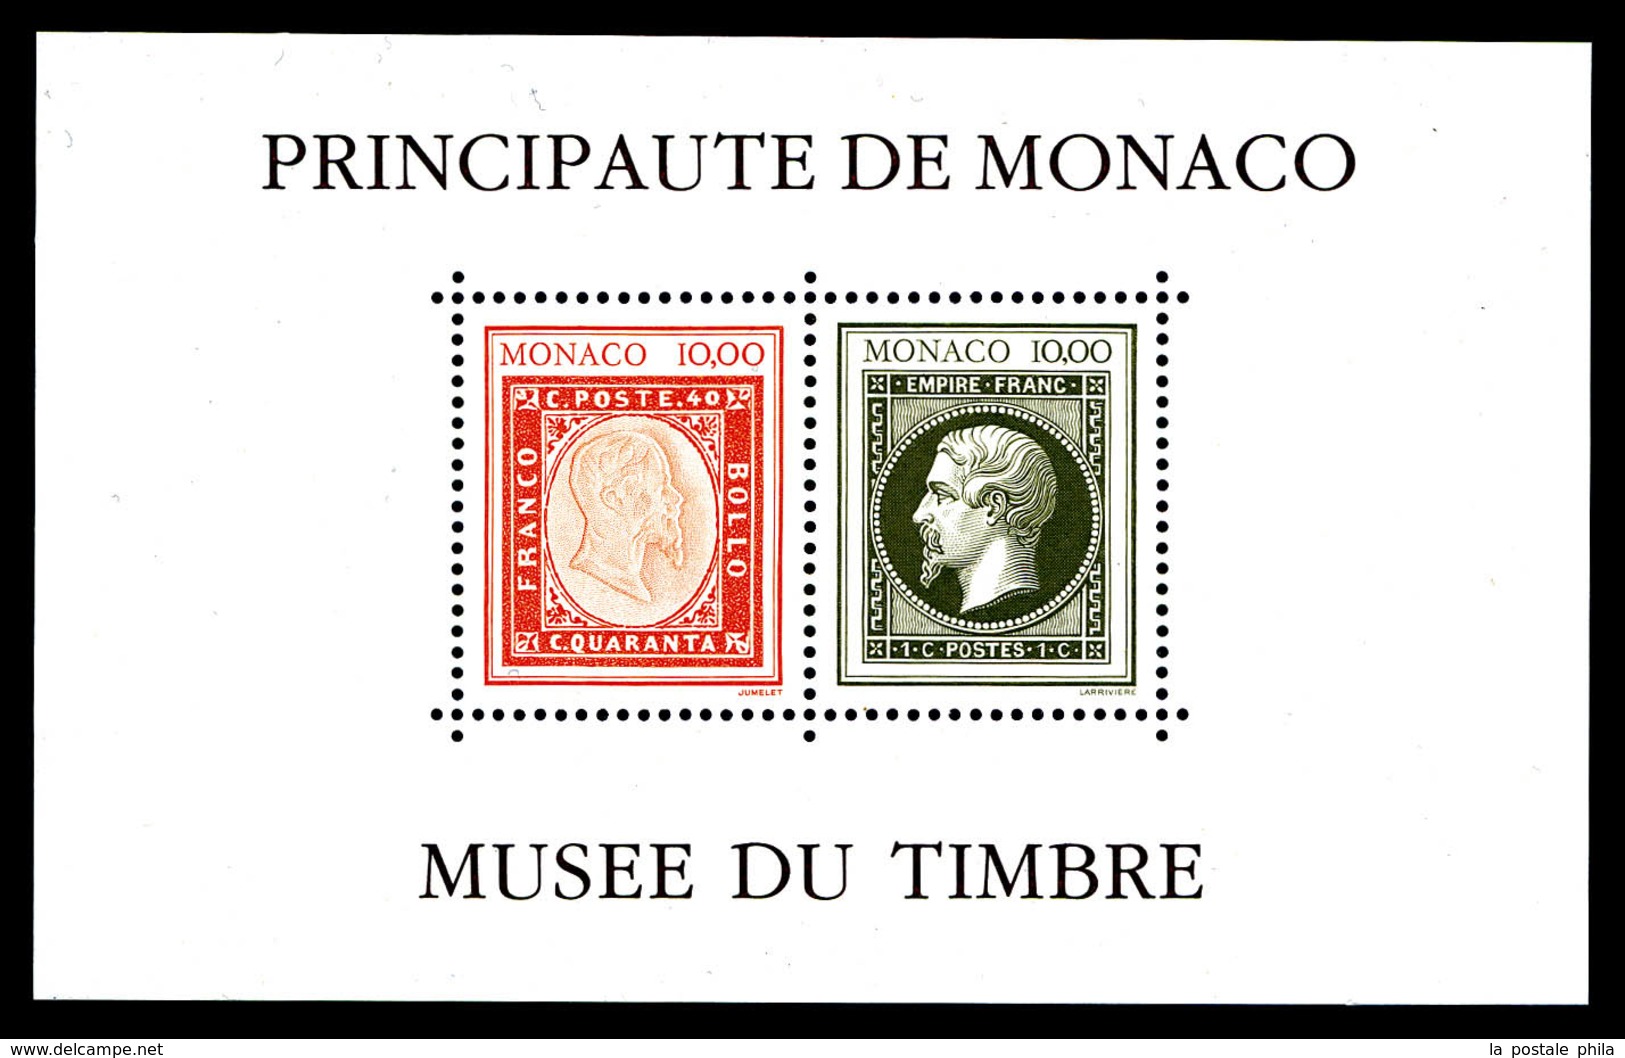 ** N°58A, Musée Du Timbre: Sans Cachet à Date (Non émis), SUP (certificat)  Qualité: **  Cote: 1500 Euros - Blocks & Kleinbögen